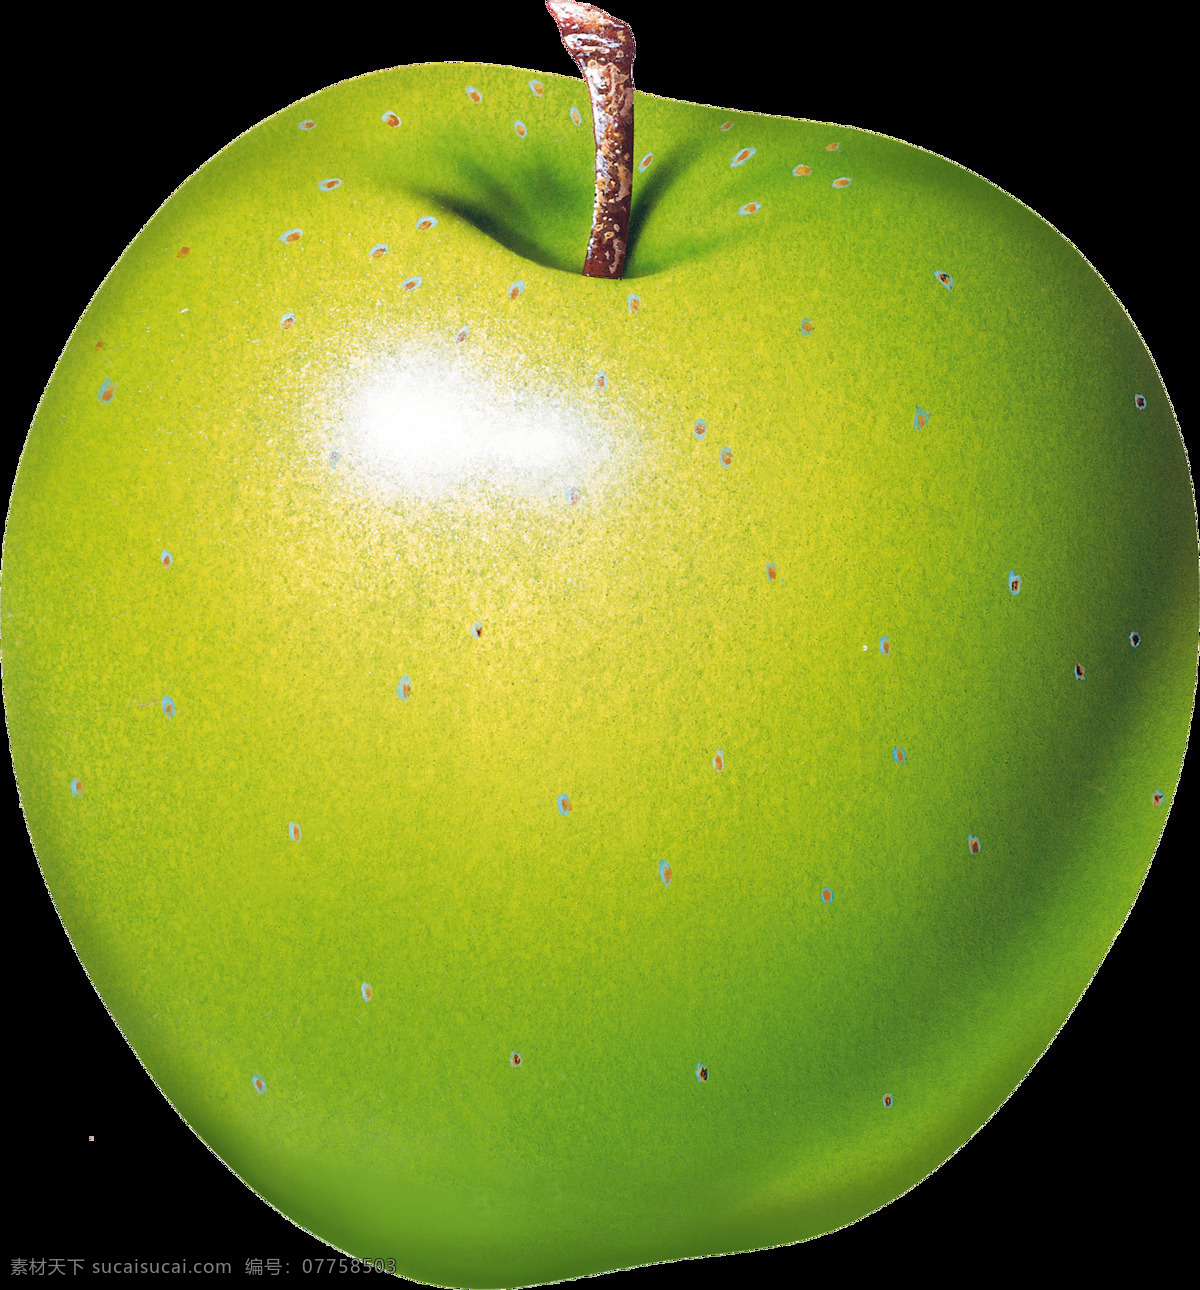 漂亮 绿色 苹果 免 抠 透明 图 层 青苹果 苹果卡通图片 苹果logo 苹果简笔画 壁纸高清 大苹果 红苹果 苹果梨树 苹果商标 金毛苹果 青苹果榨汁